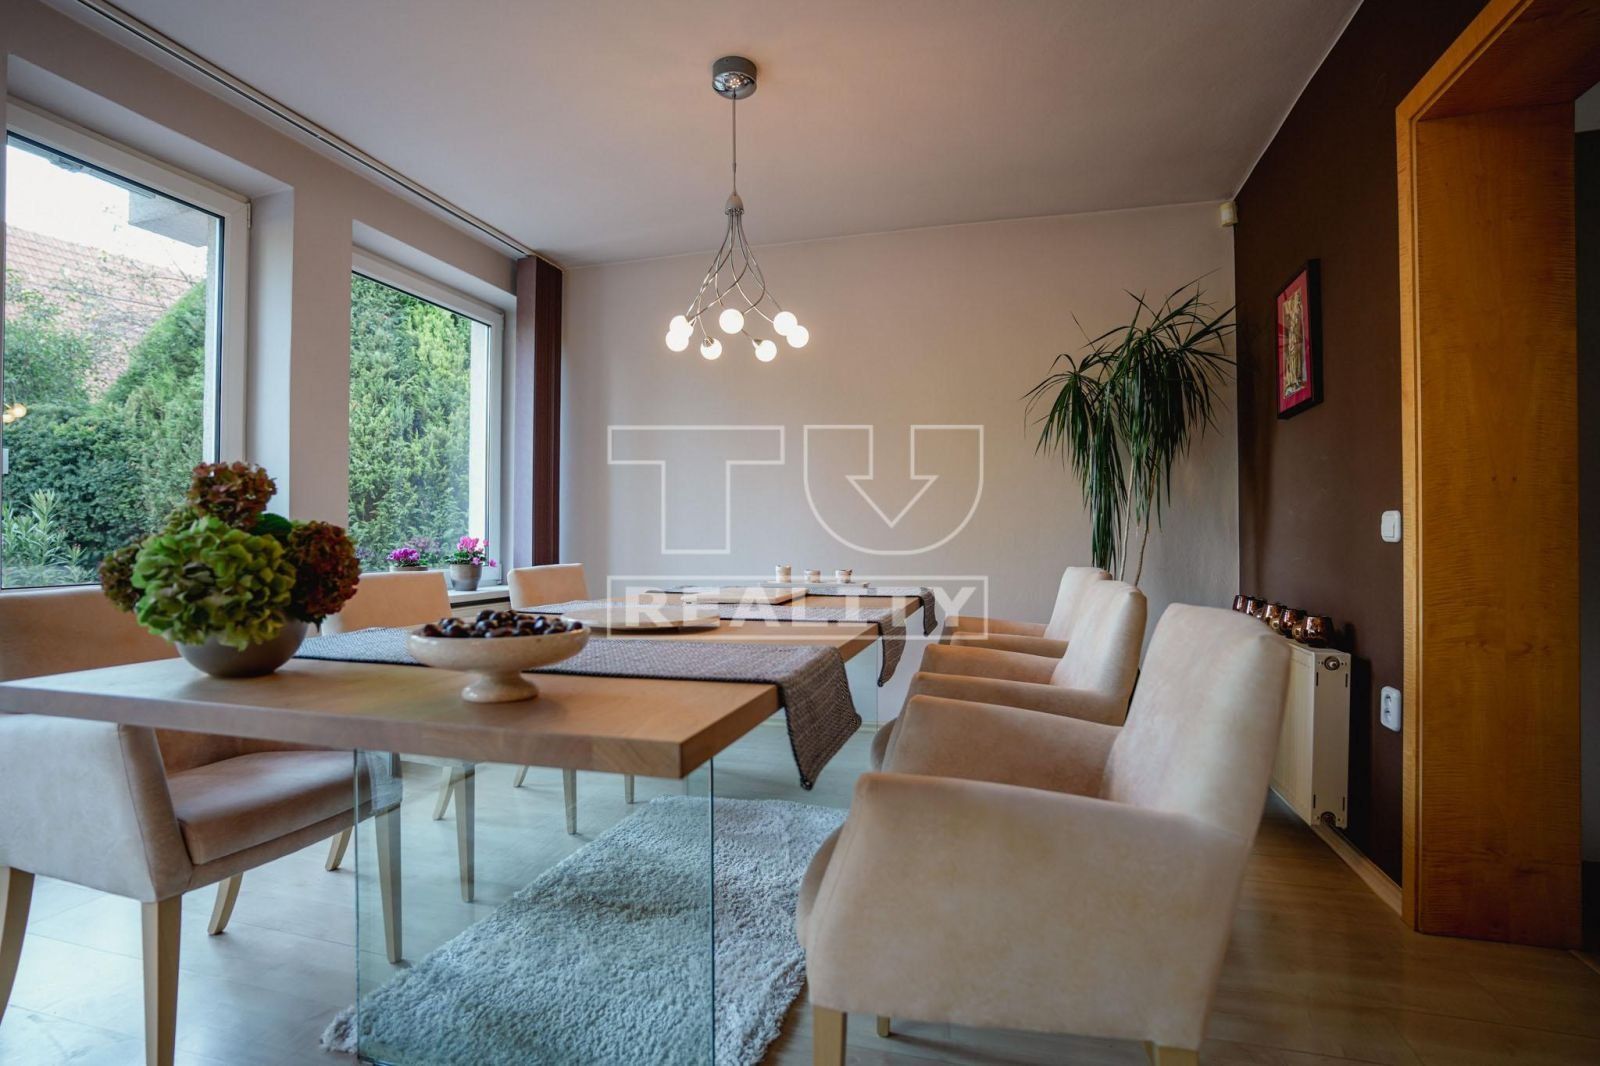 TUreality ponúka exkluzívne na predaj moderný nádherný rodinný dom 6 km od Trnavy